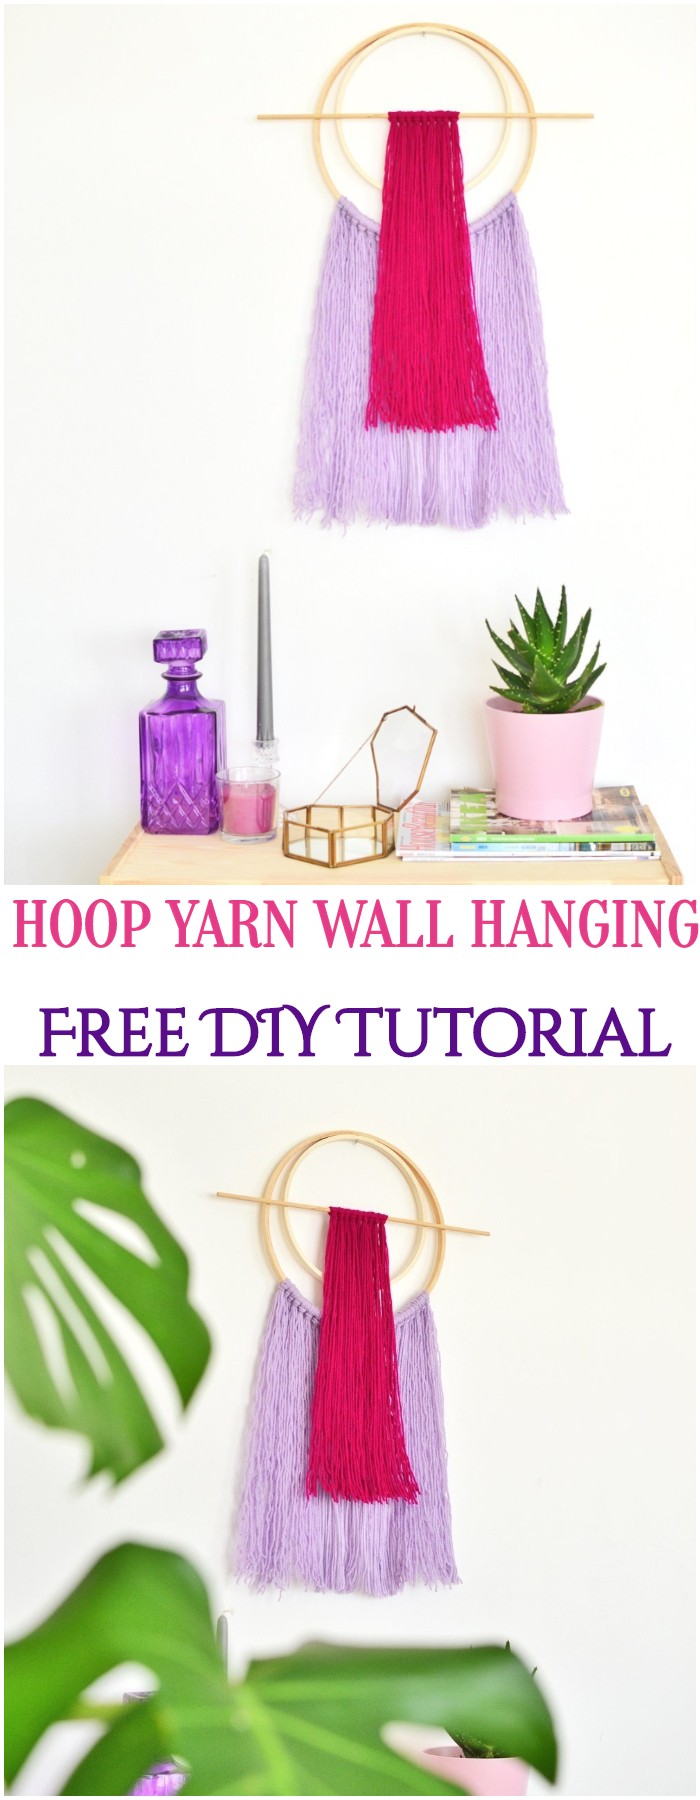 DIY Hoop Yarn Wall Hanging